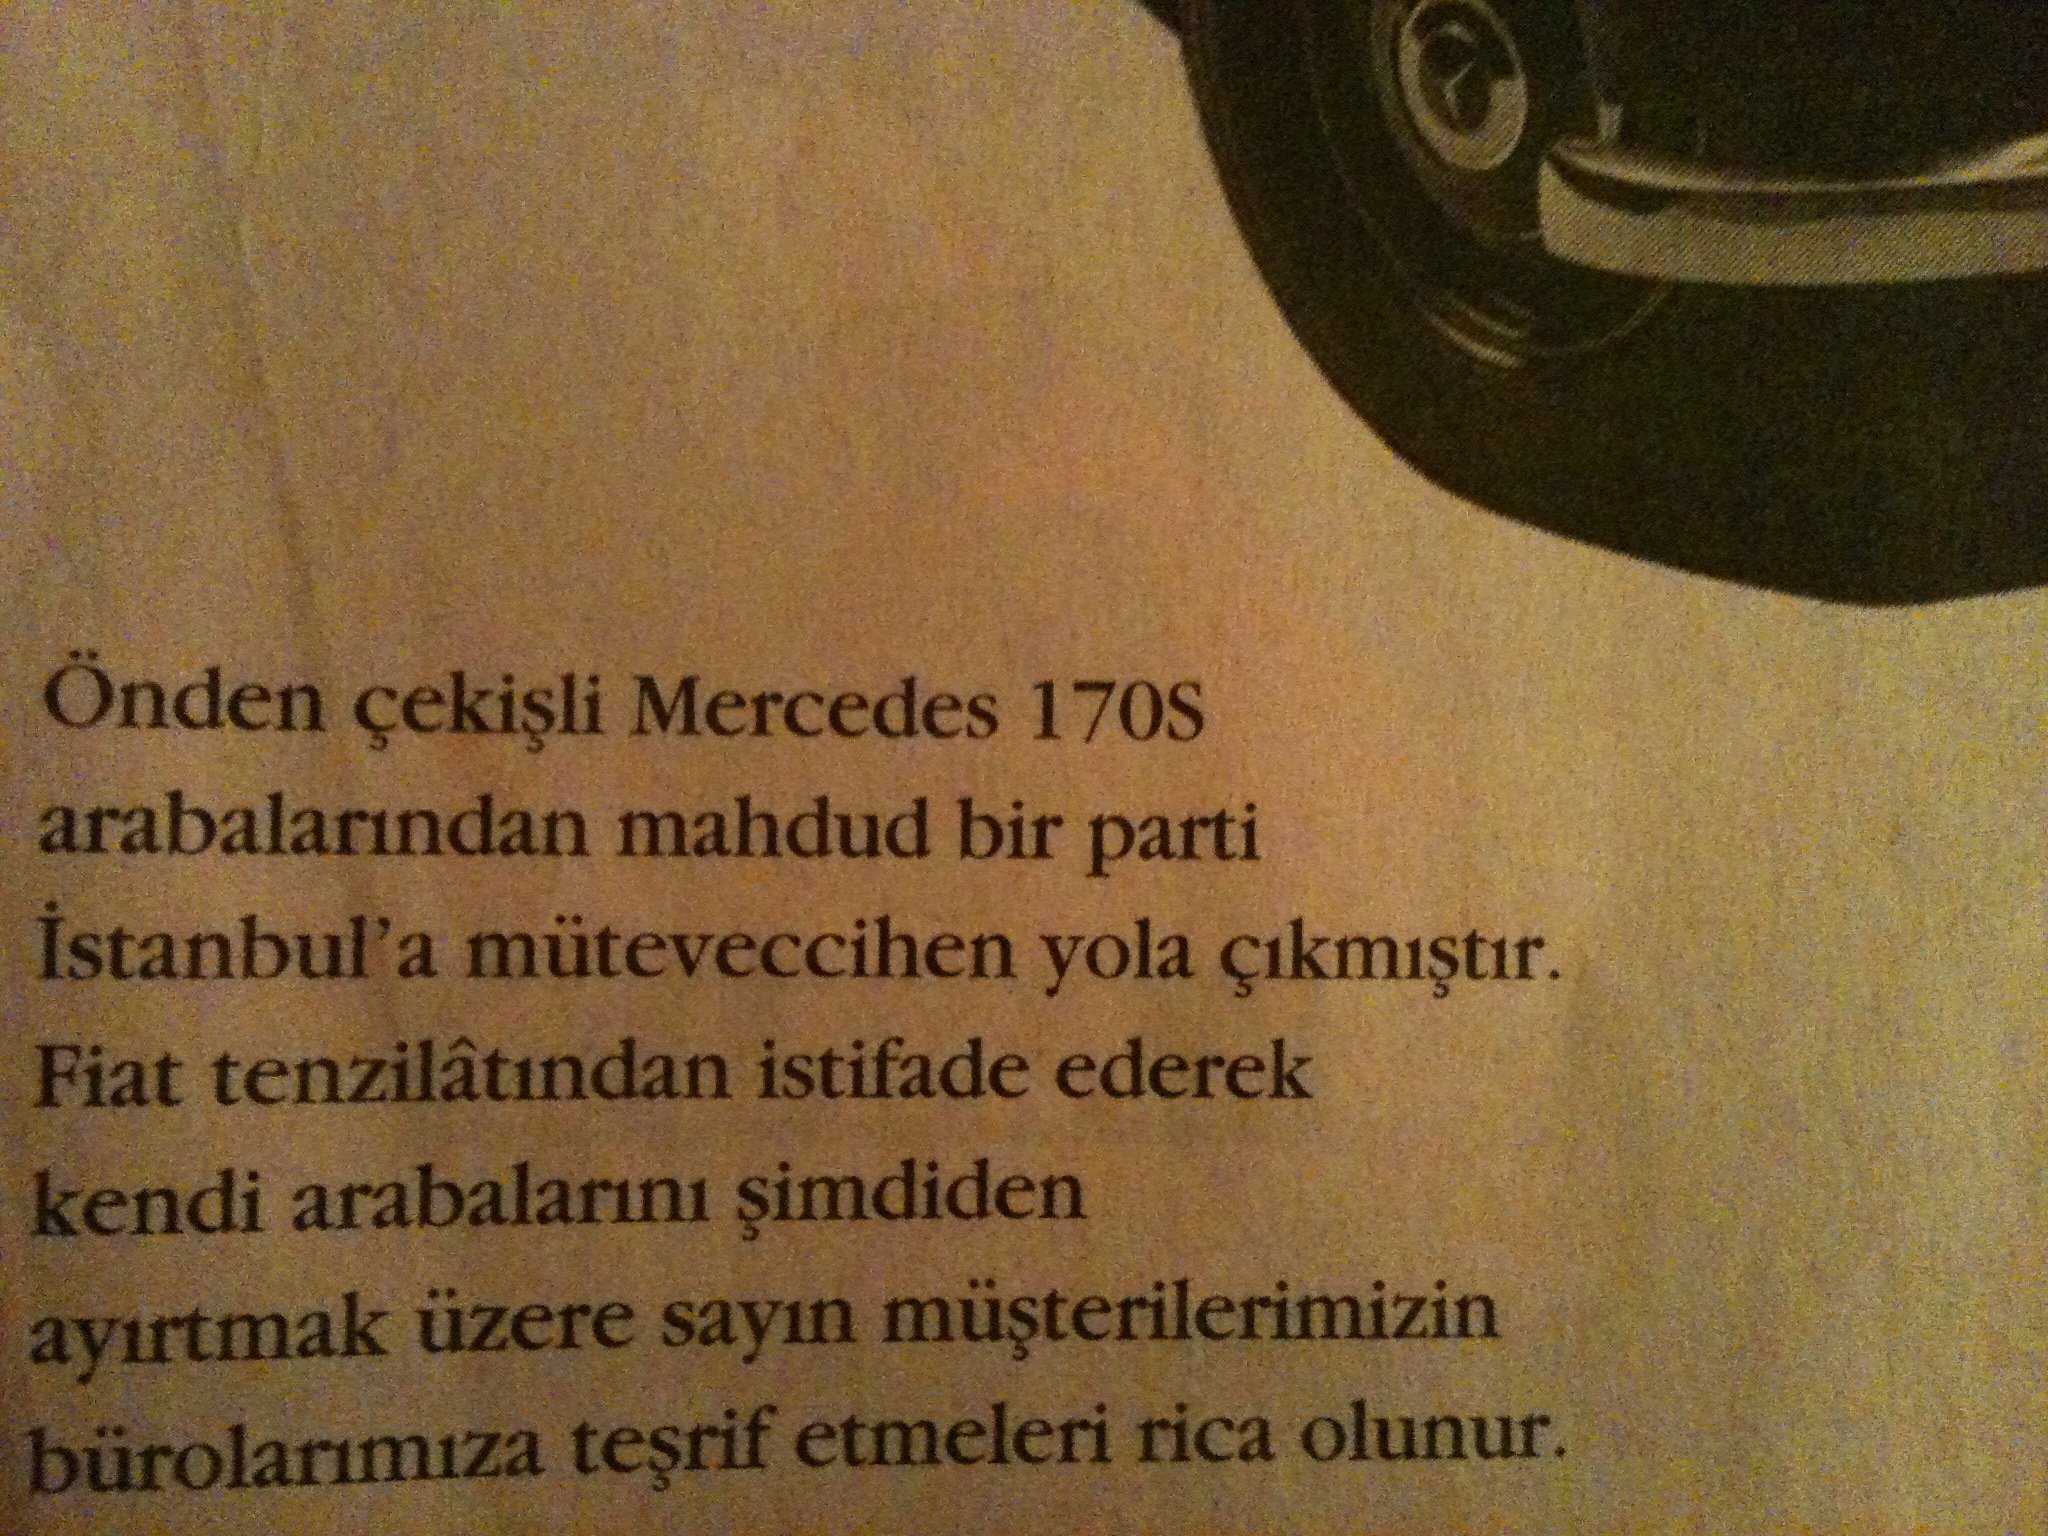  'Bu Fevkalade Otomobil ile Tüm Gözler Üzerinizde Olacak.' 50'li Yıllardan Bir reklam. Mercedes 170S